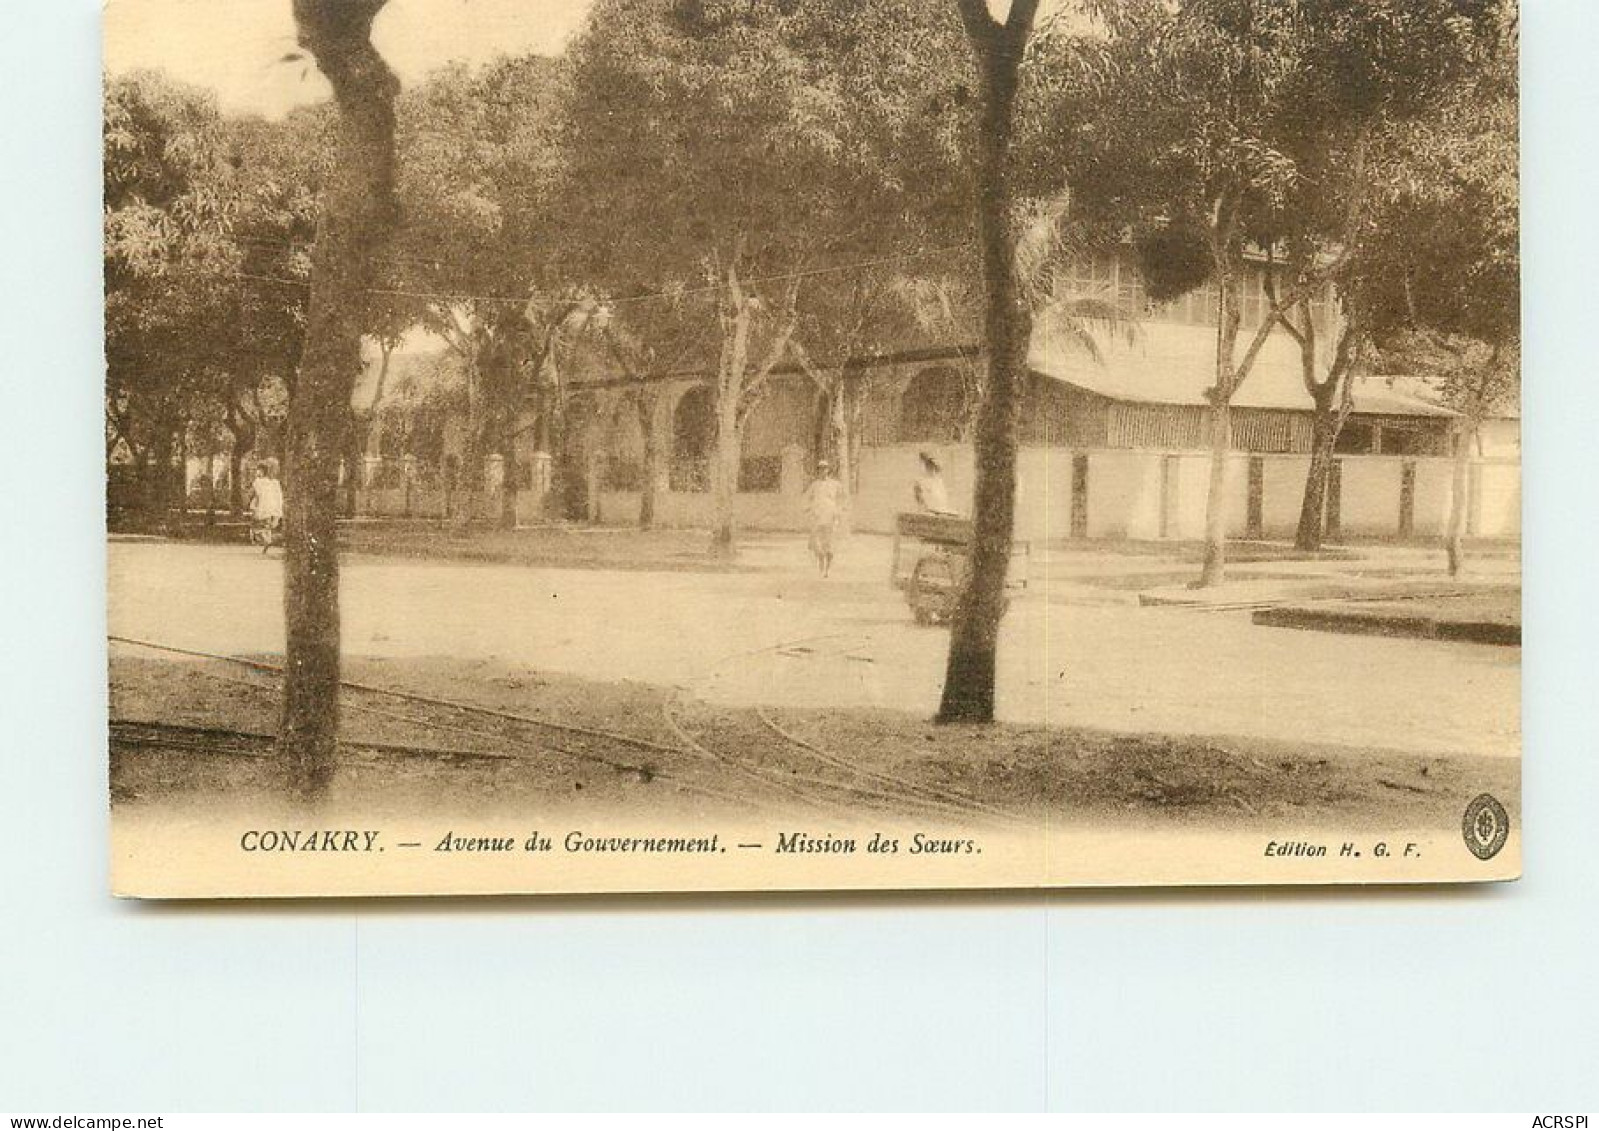 GUINEE   CONAKRY  Avenue Du Gouvernement Mission Des Soeurs TT 1430 - French Guinea